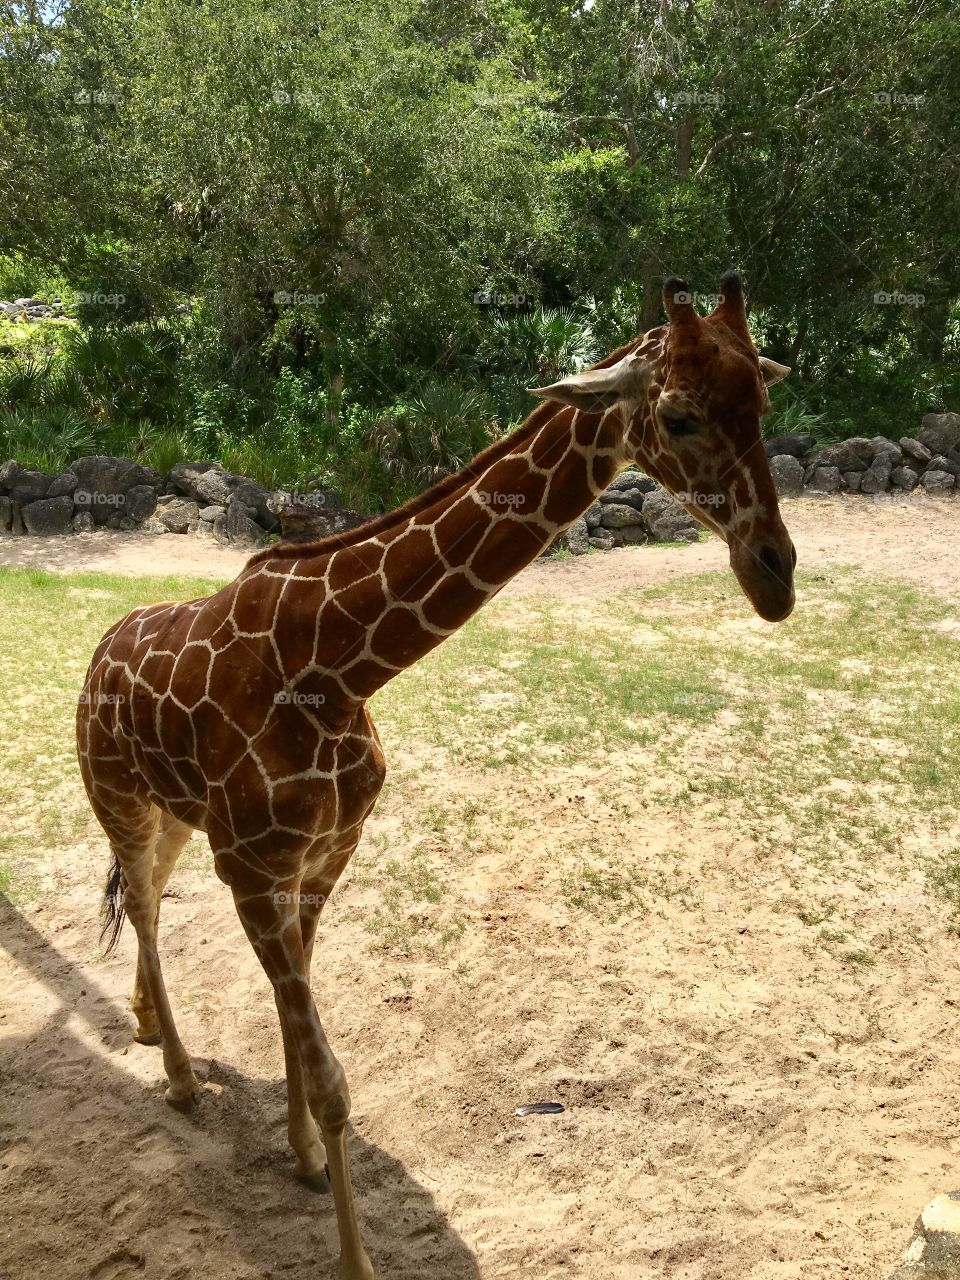 Giraffe in Florida